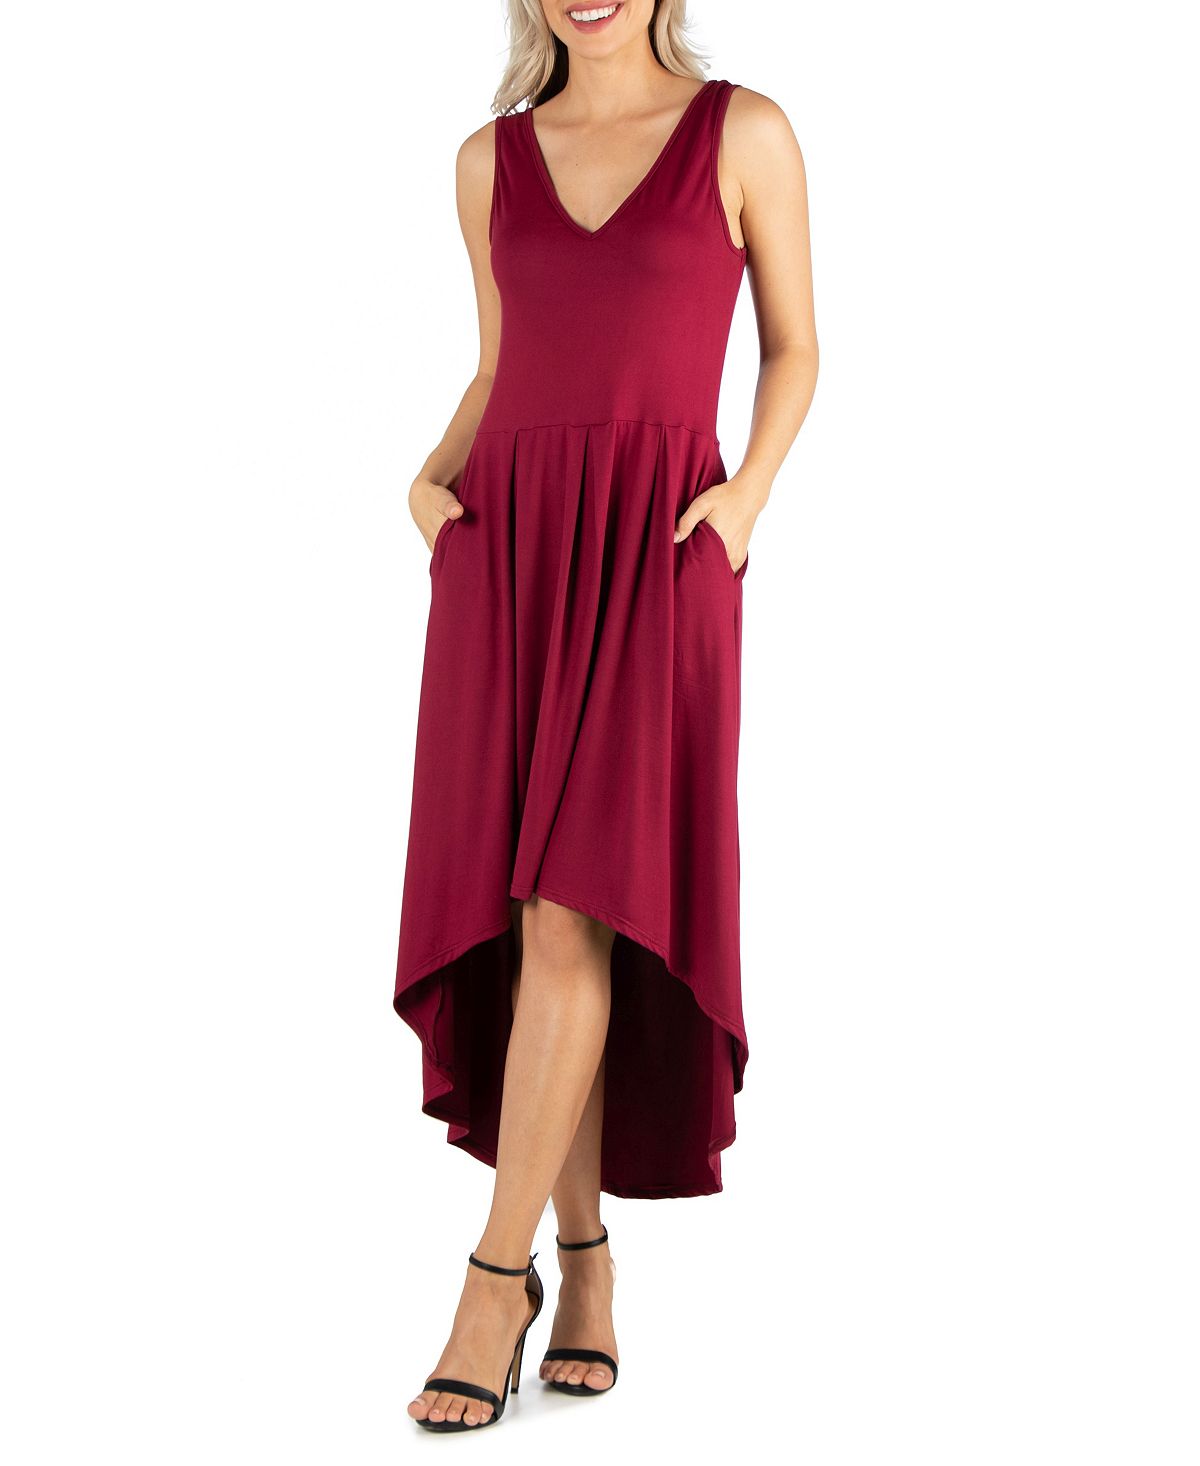 Женское платье без рукавов с завышенной талией и расклешенным низом 24seven Comfort Apparel фото